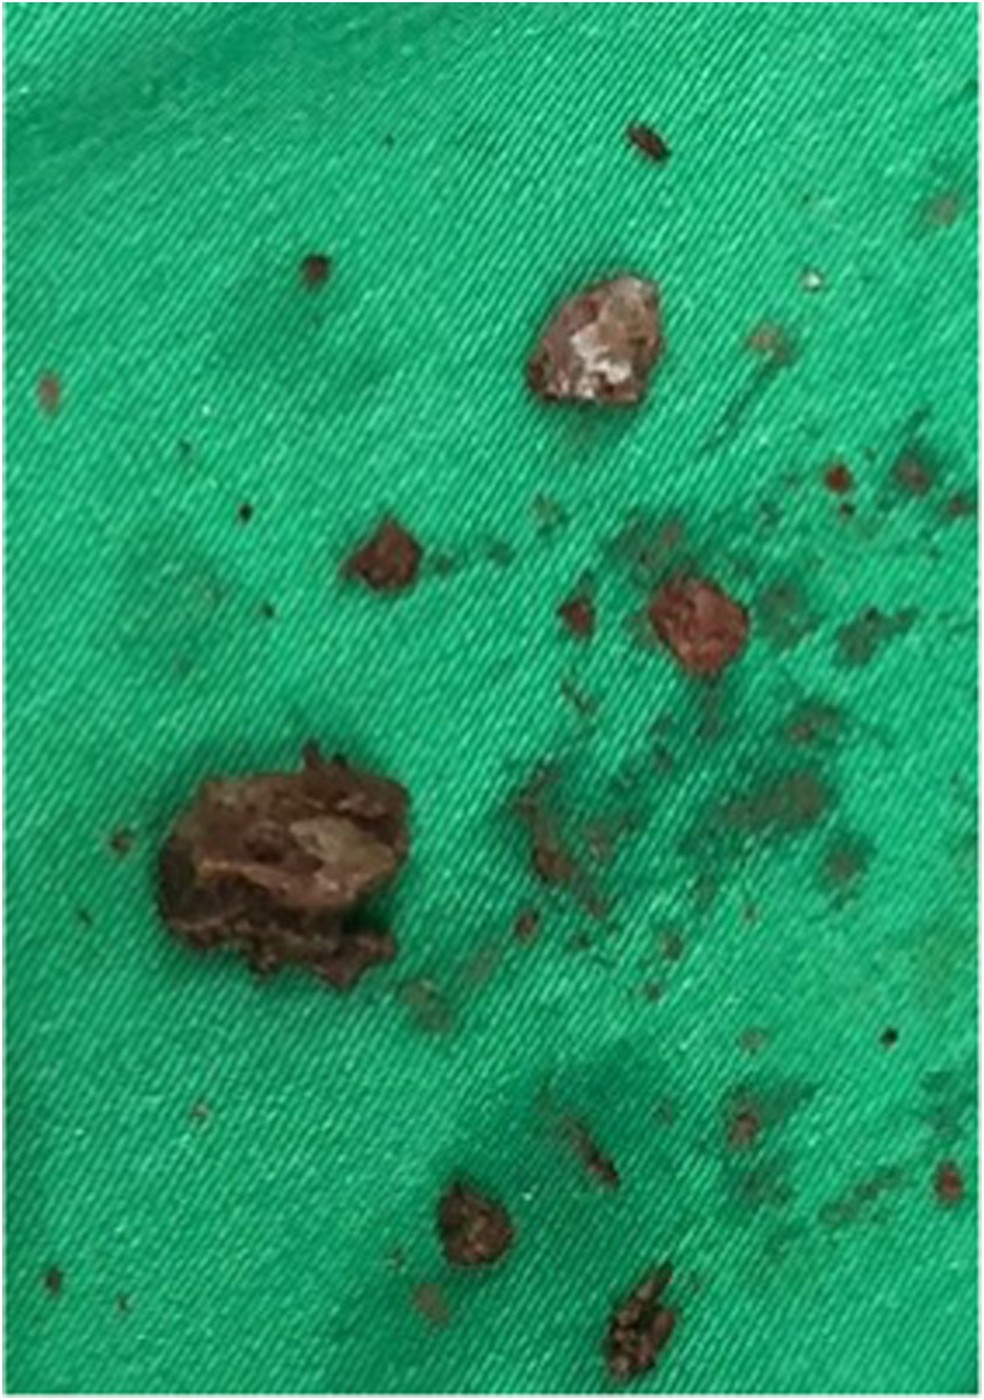 Pedra encontrada na vagina de mulher foi quebrada com laser — Foto: Reprodução/Urology Case Reports